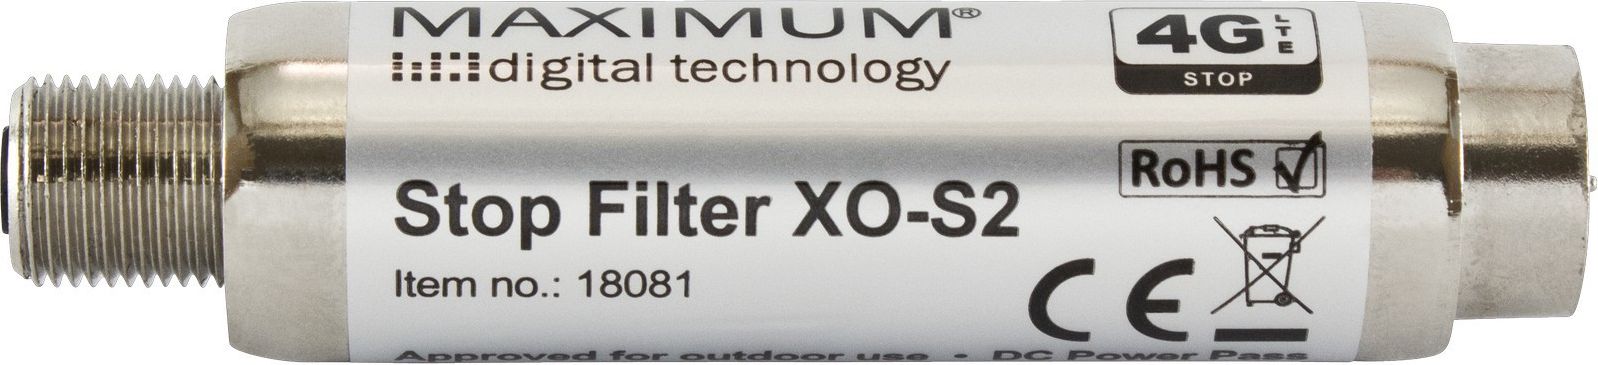 mantona Foldable Reflector 5in1 56cm UV Filtrs